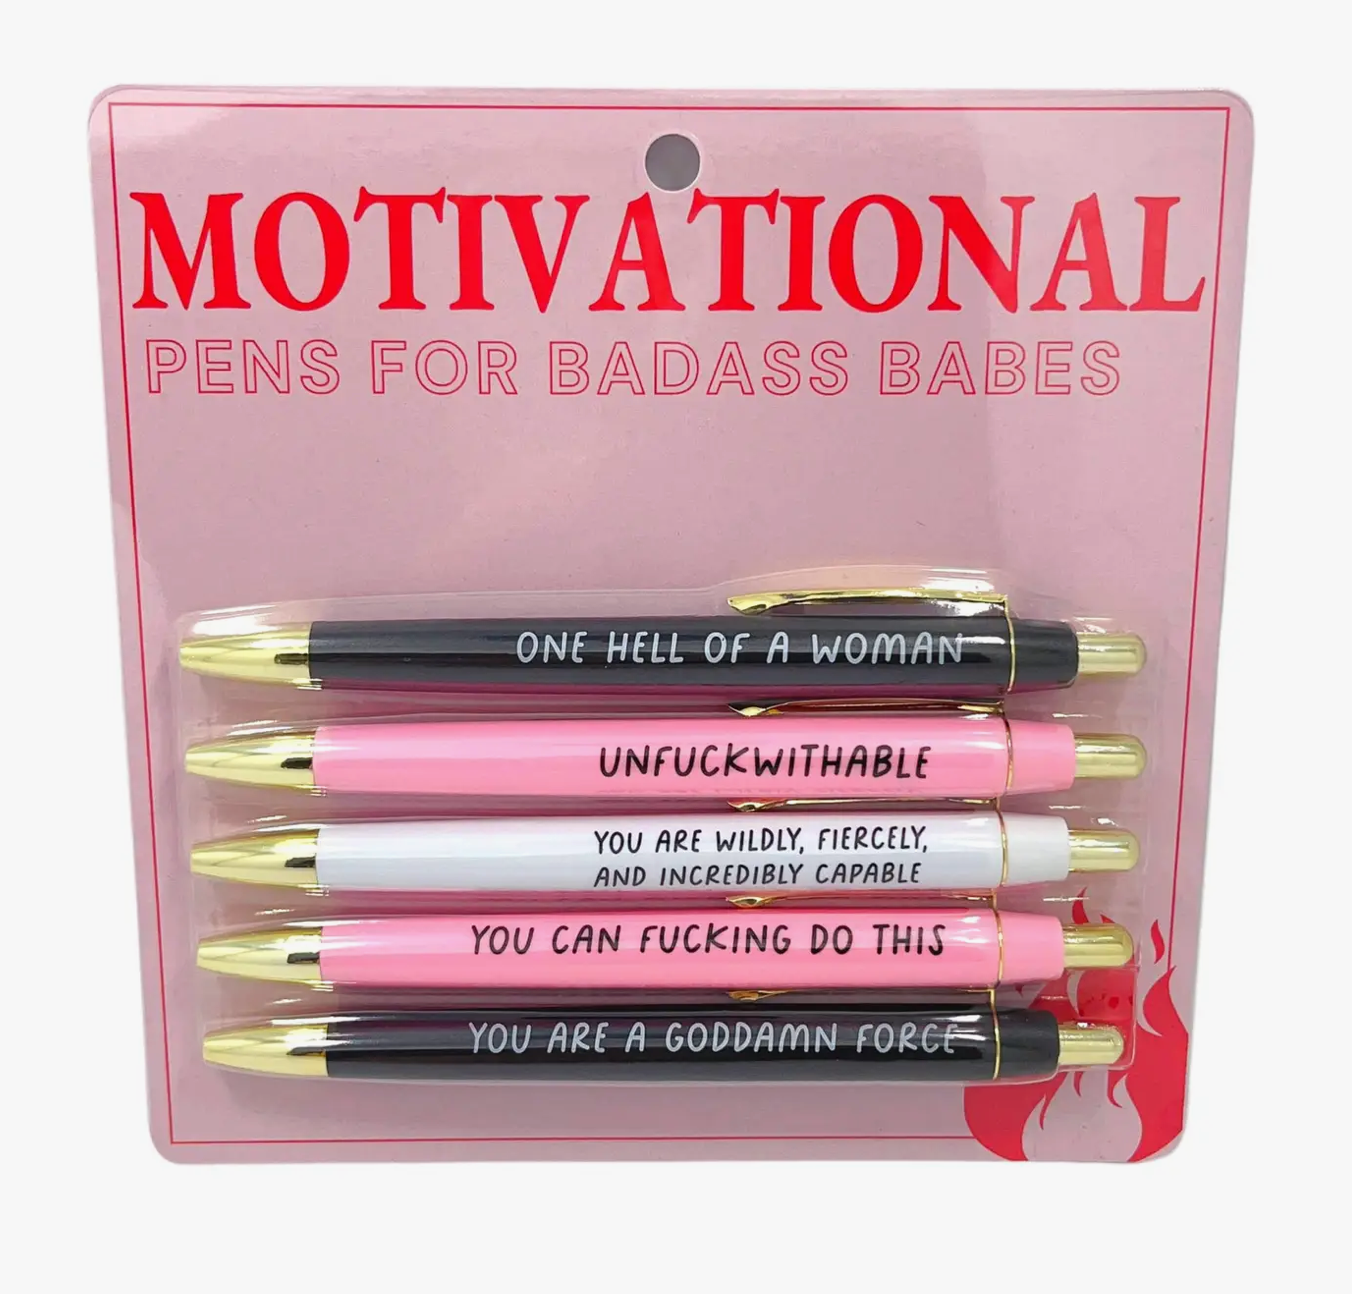  Mementofor Motivational Badass Pen Set, Motivational